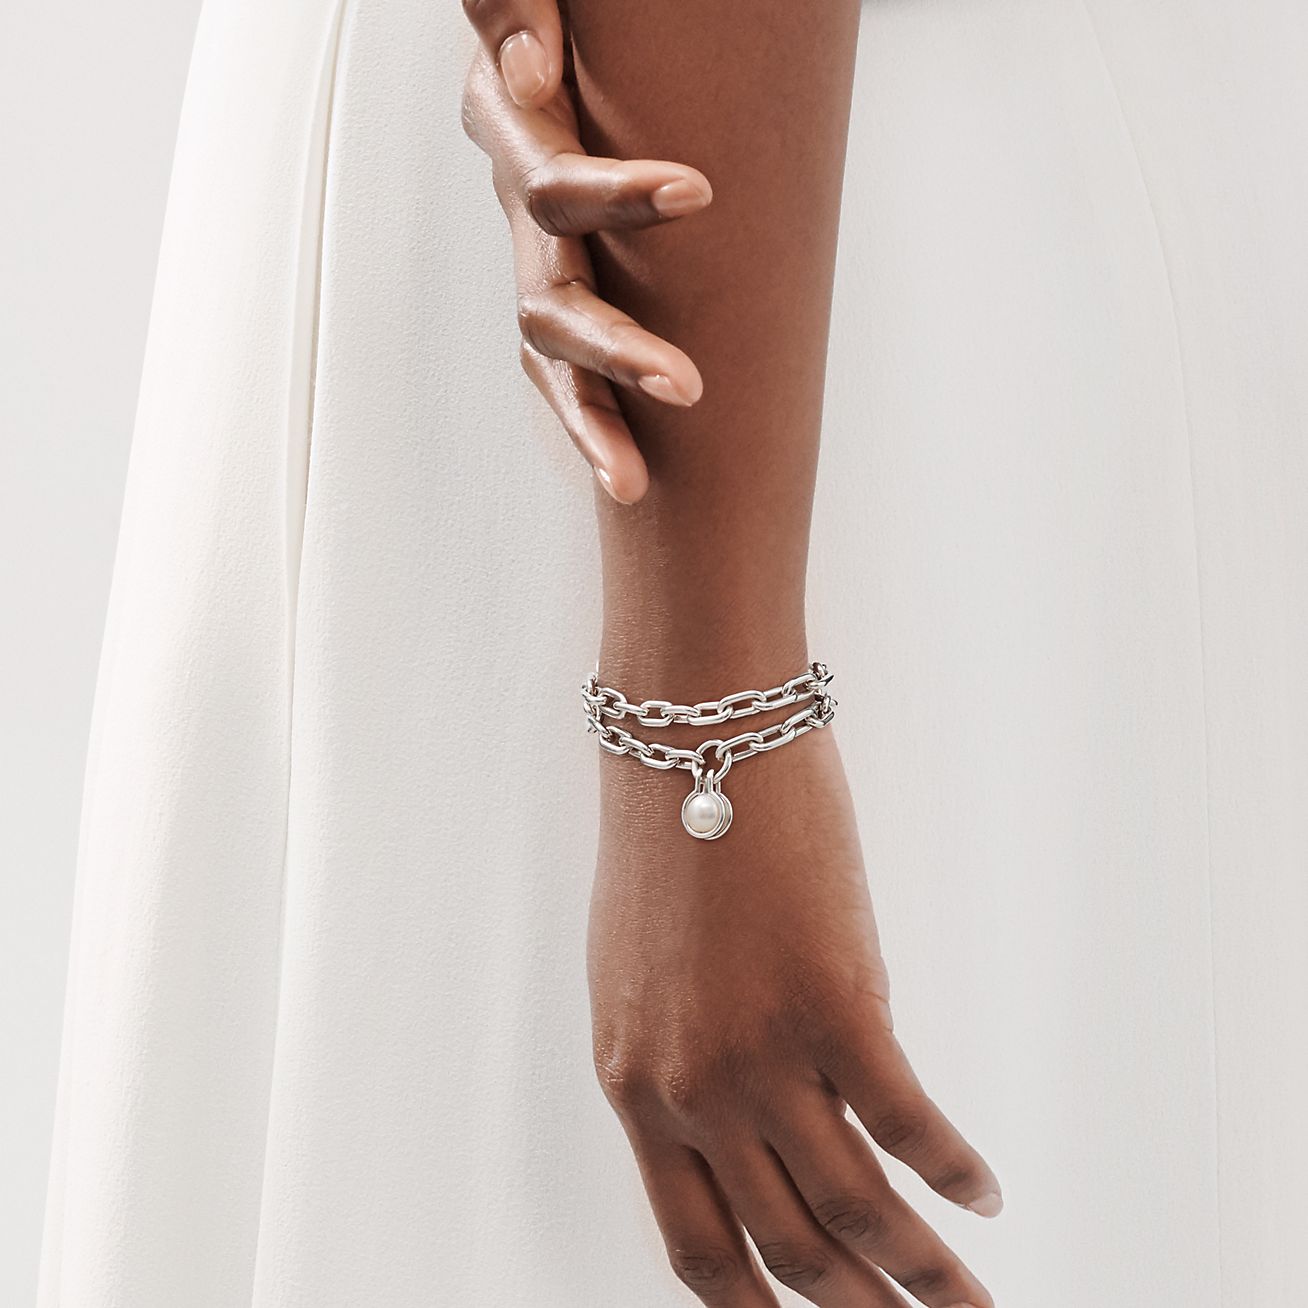 tiffany silver pearl bracelet